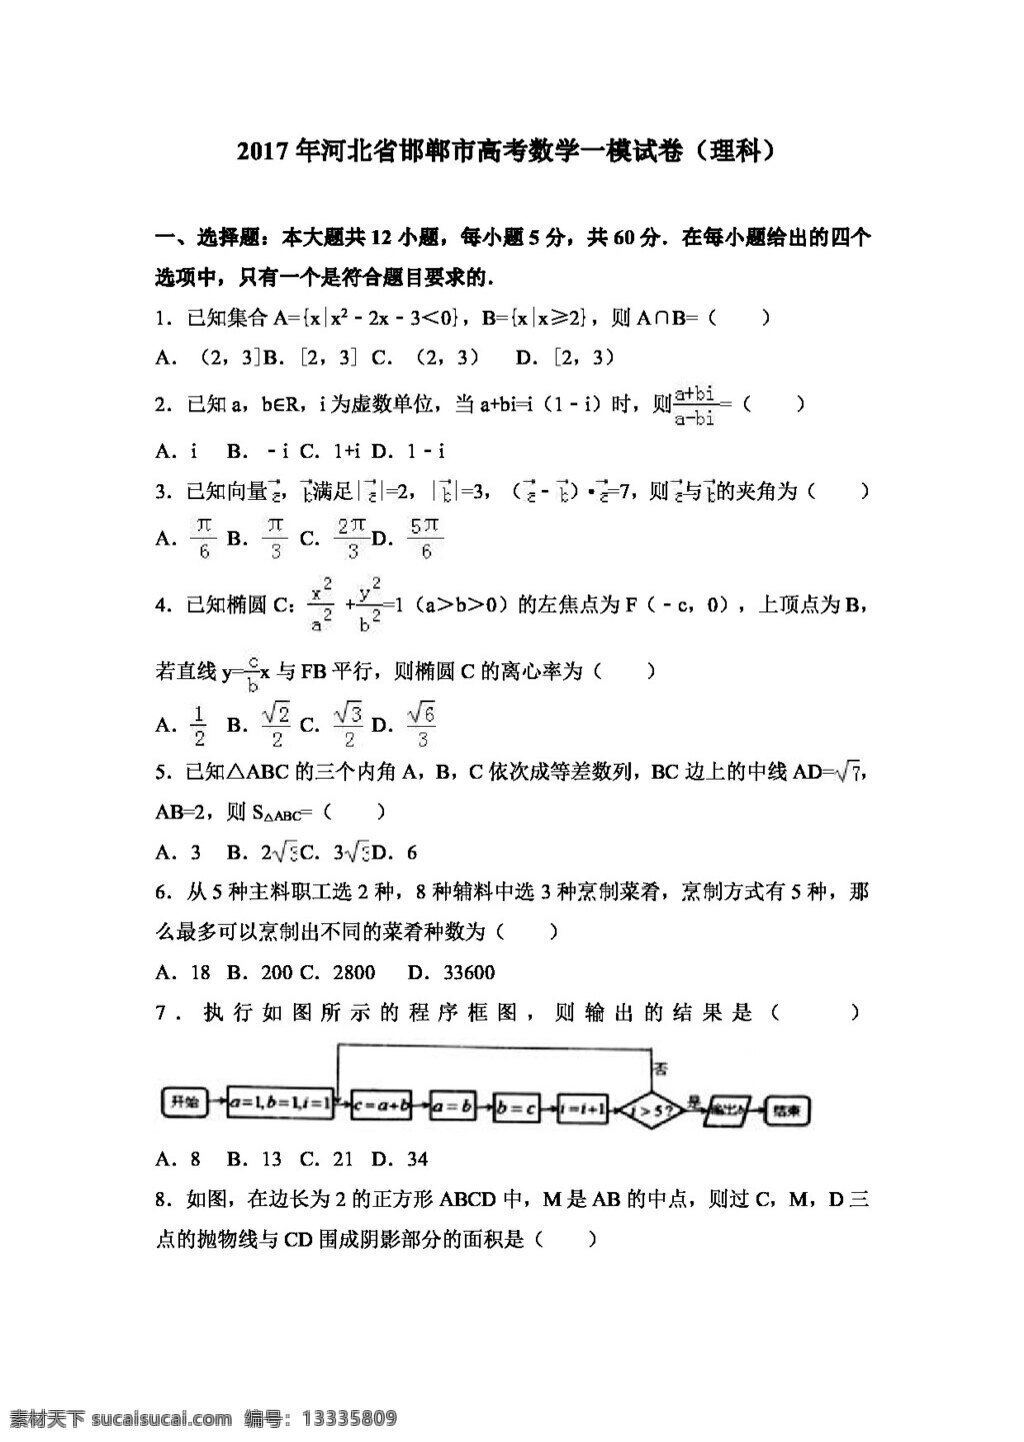 数学 苏 教 版 2017 年 河北省 邯郸市 高考 模 试卷 理科 高考专区 苏教版